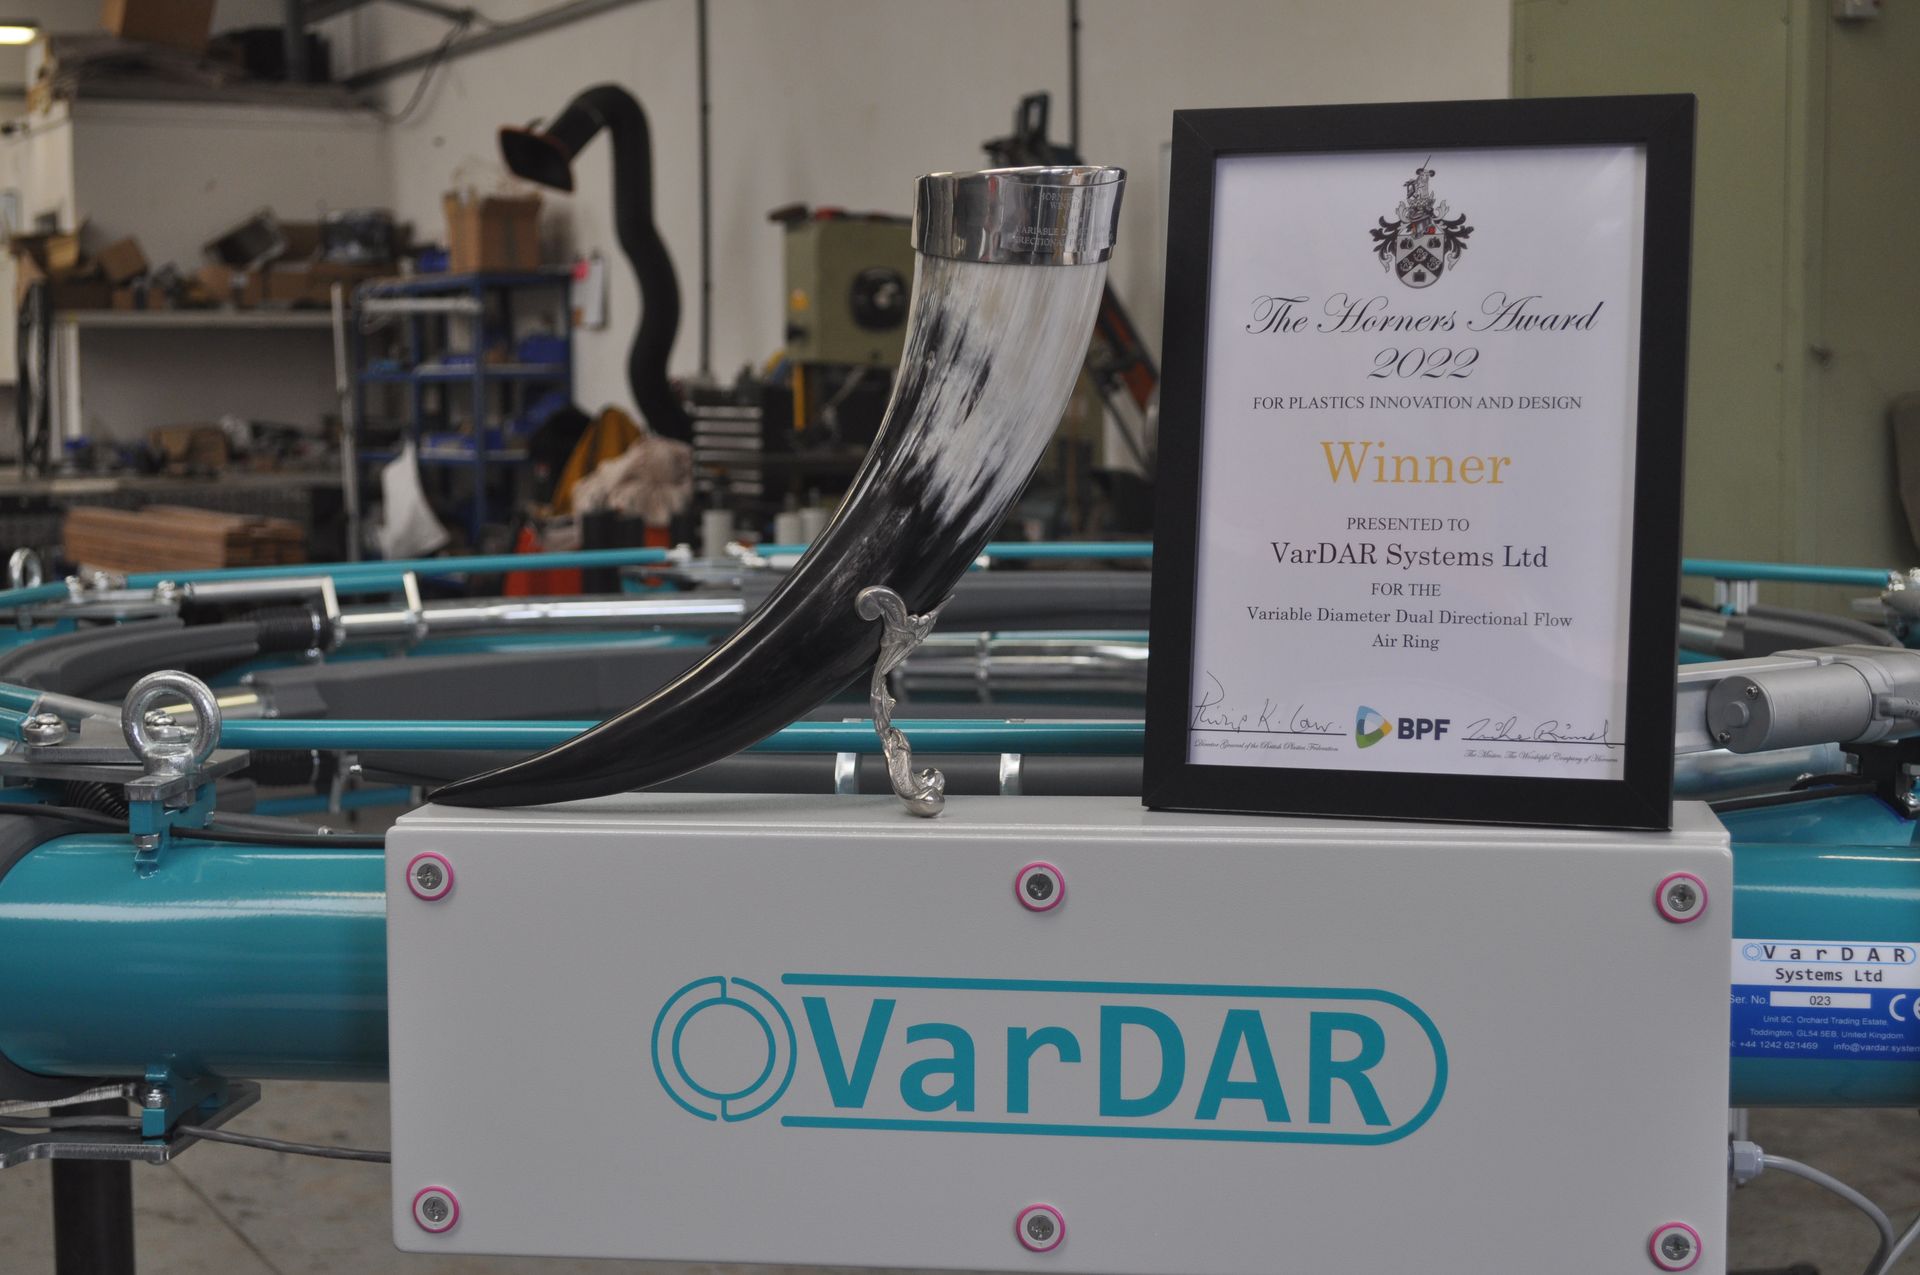 Horners award winner 2022 VarDAR Systems